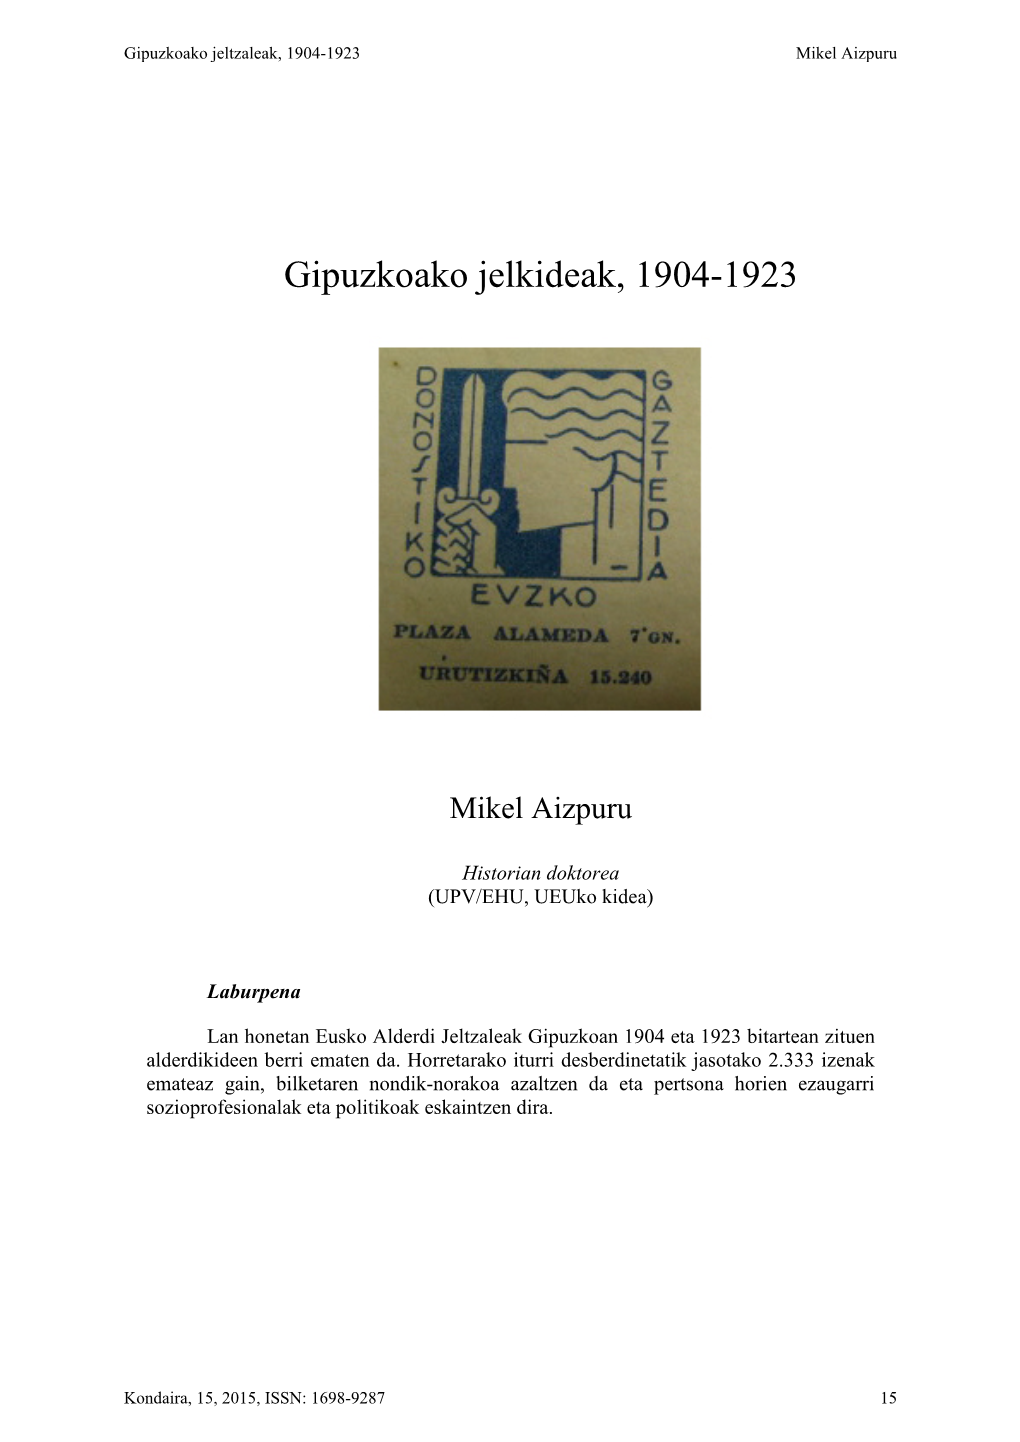 Gipuzkoako Jelkideak, 1904-1923